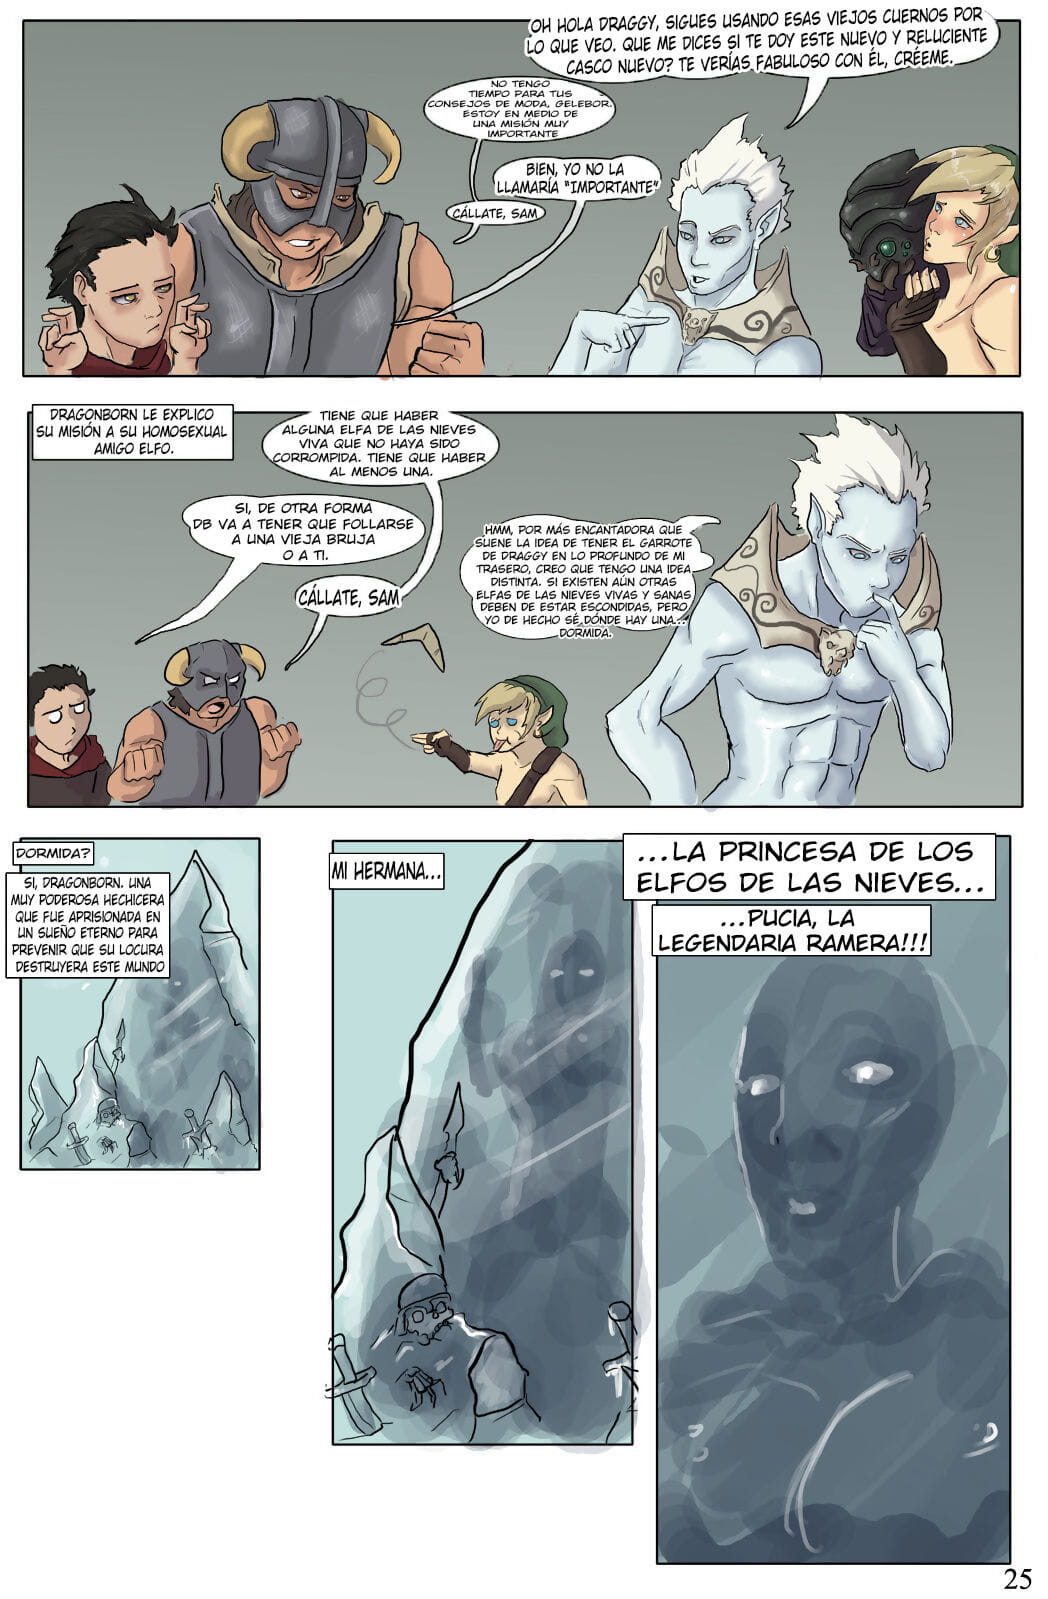 el devenir de dragonborn Teil 3 page 1